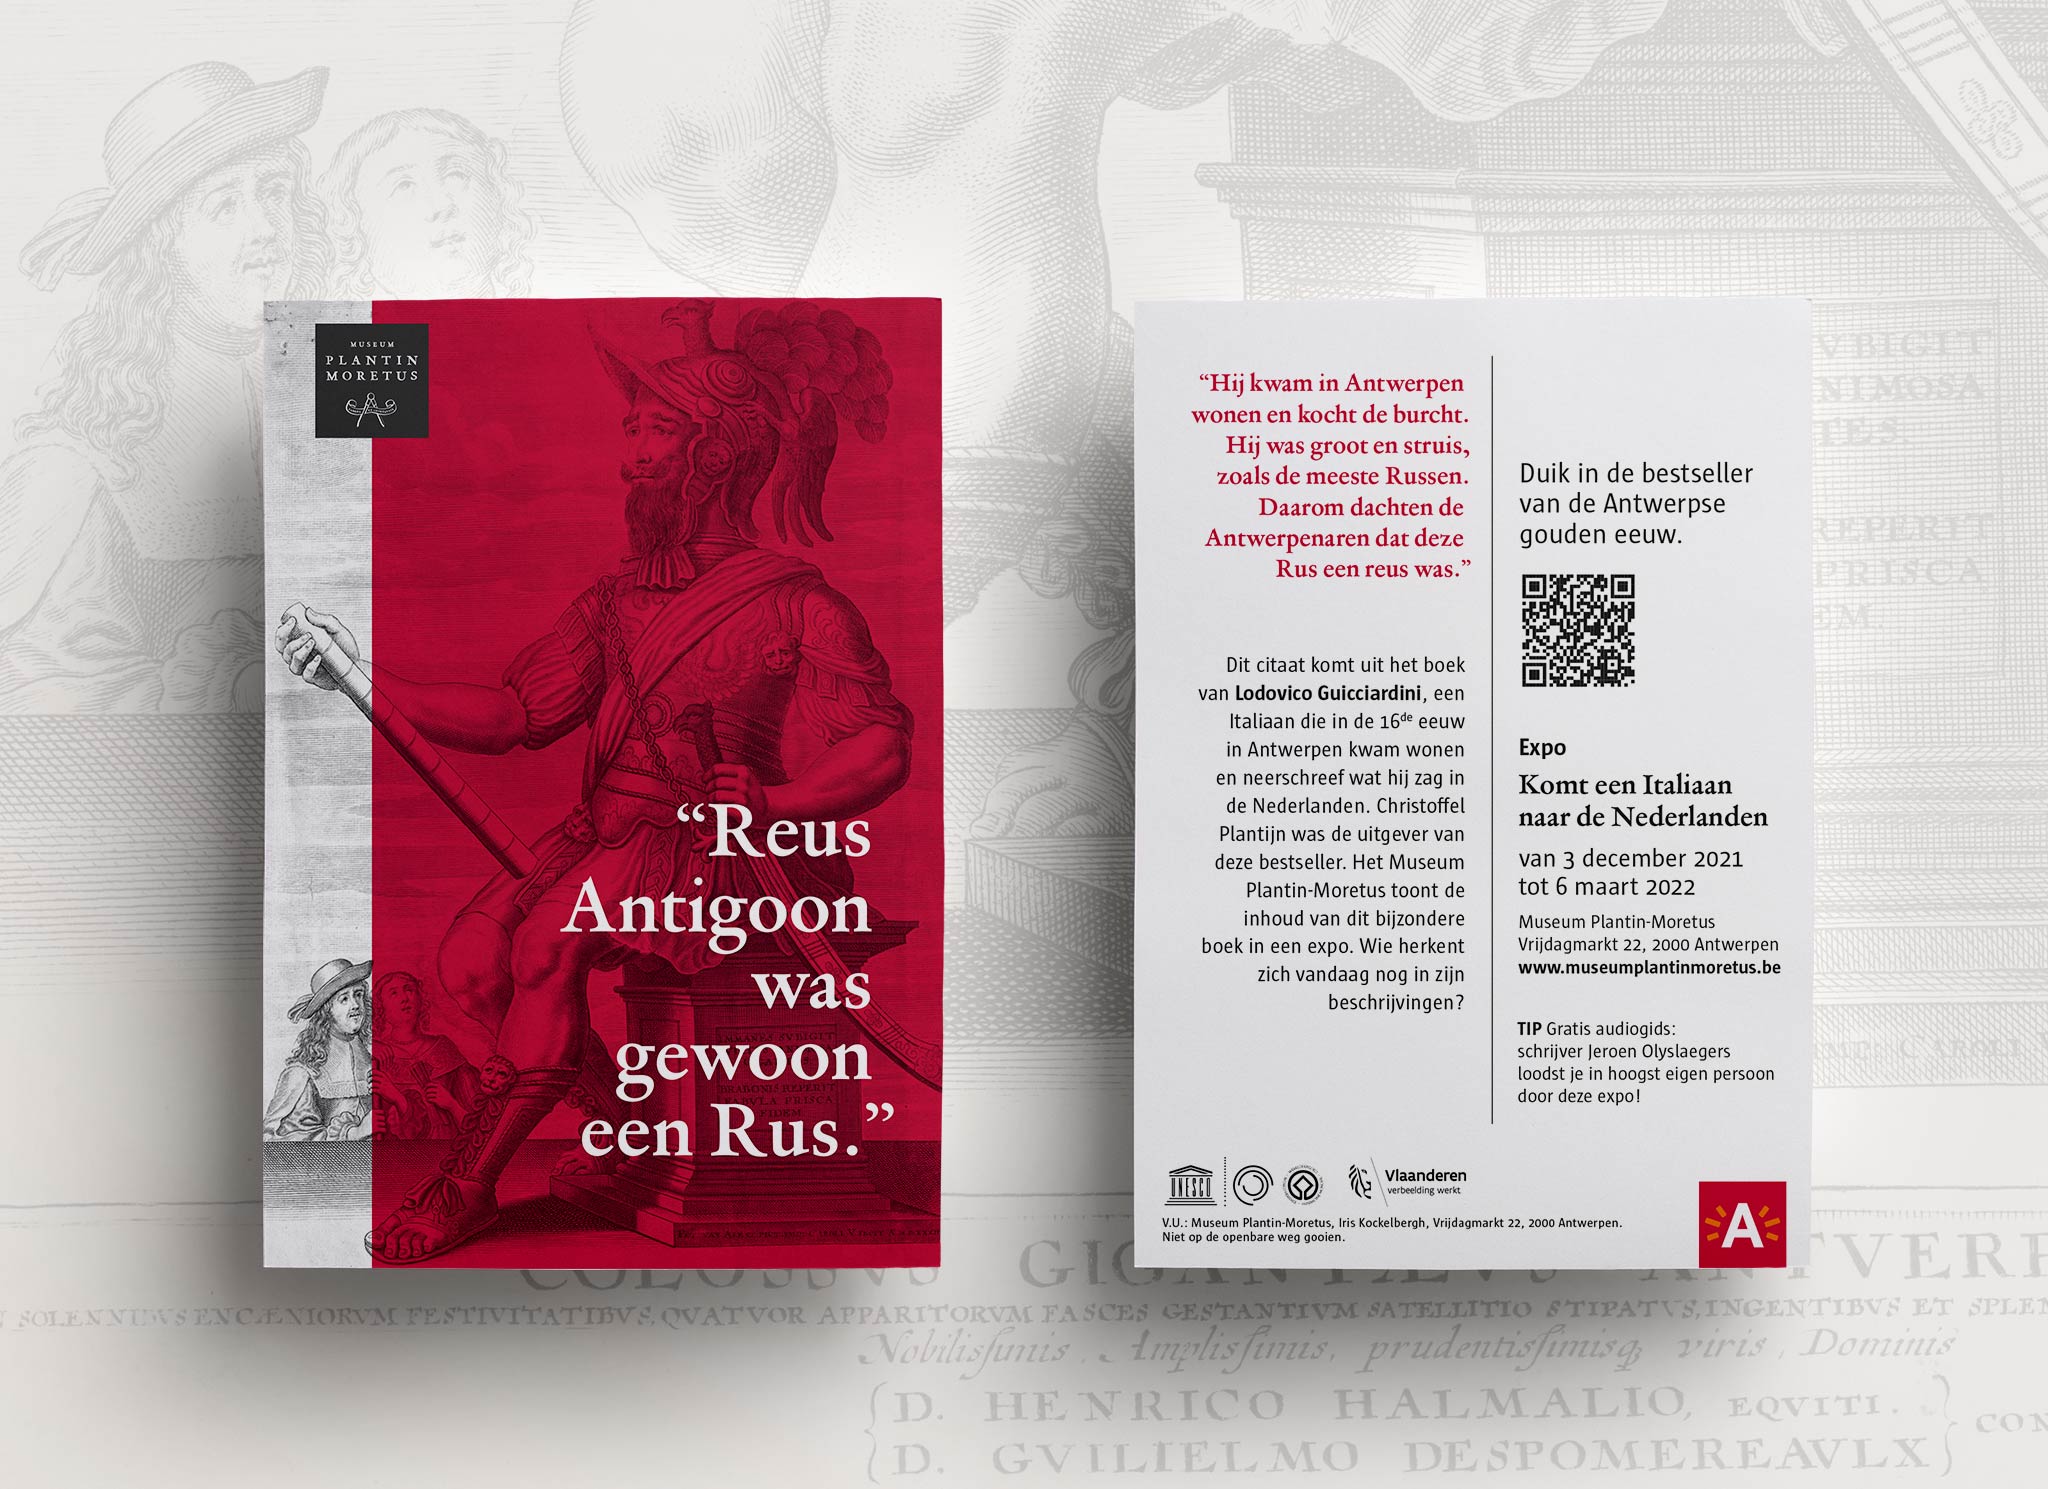 Campagne voor de expo 'Komt een Italiaan naar de Nederlanden' in het Plantin-Moretus museum in Antwerpen.